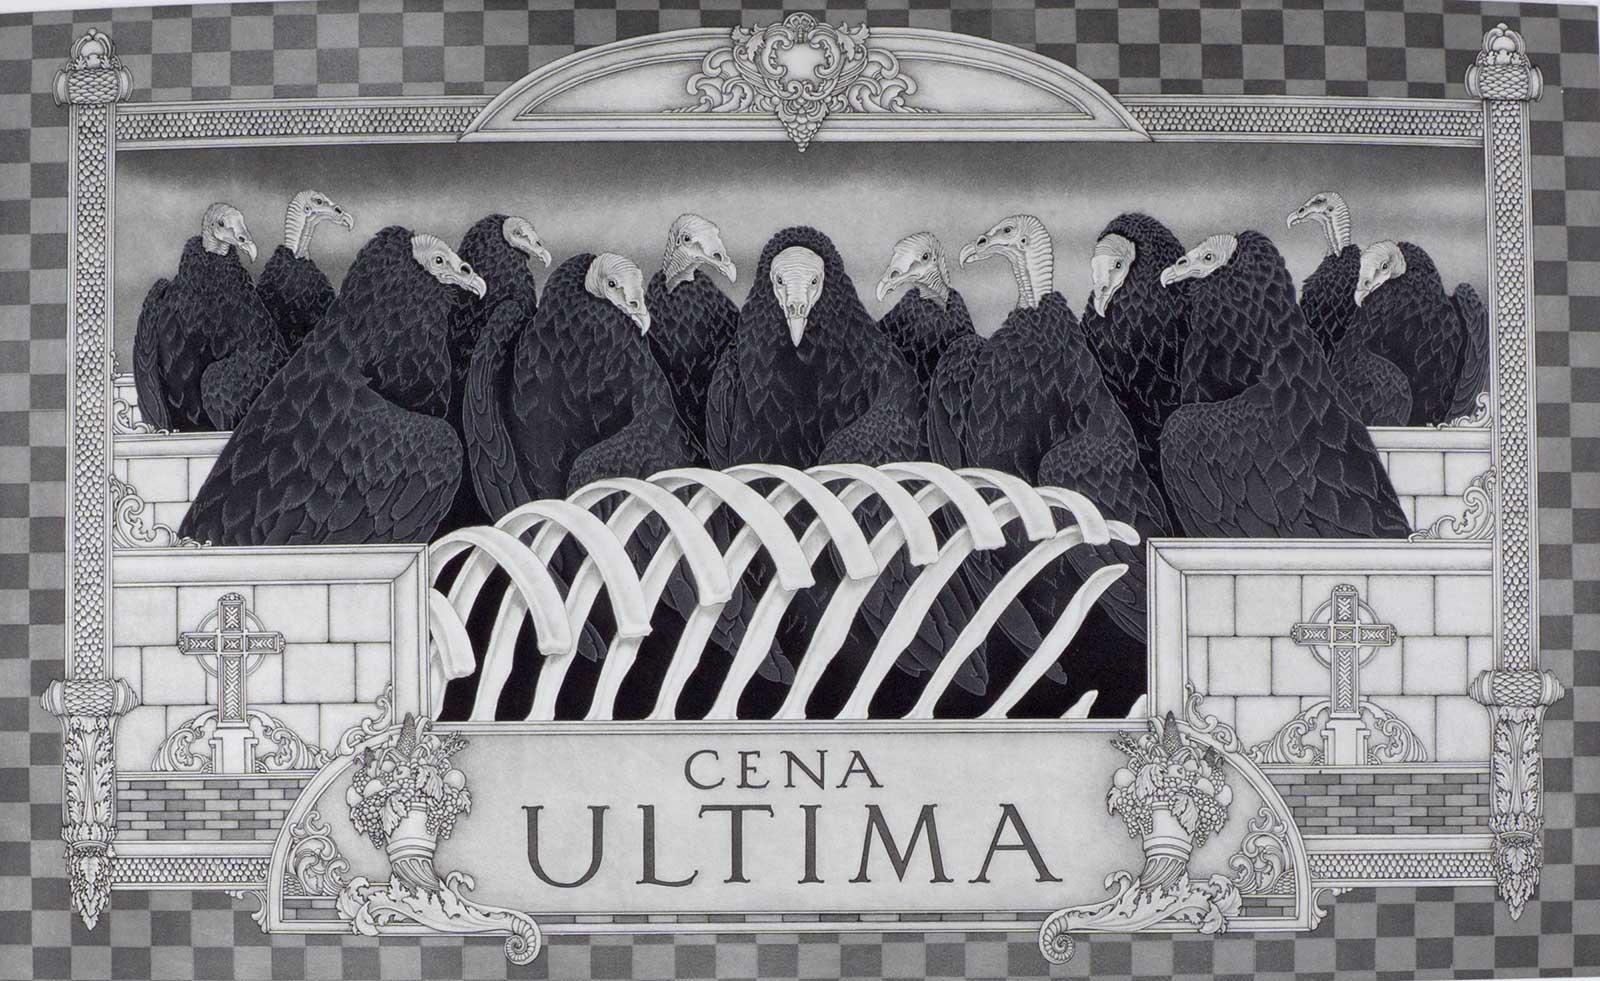 Cena Ultima (Guinea Vultures steht für Prediger in dieser Version von Last Supper)